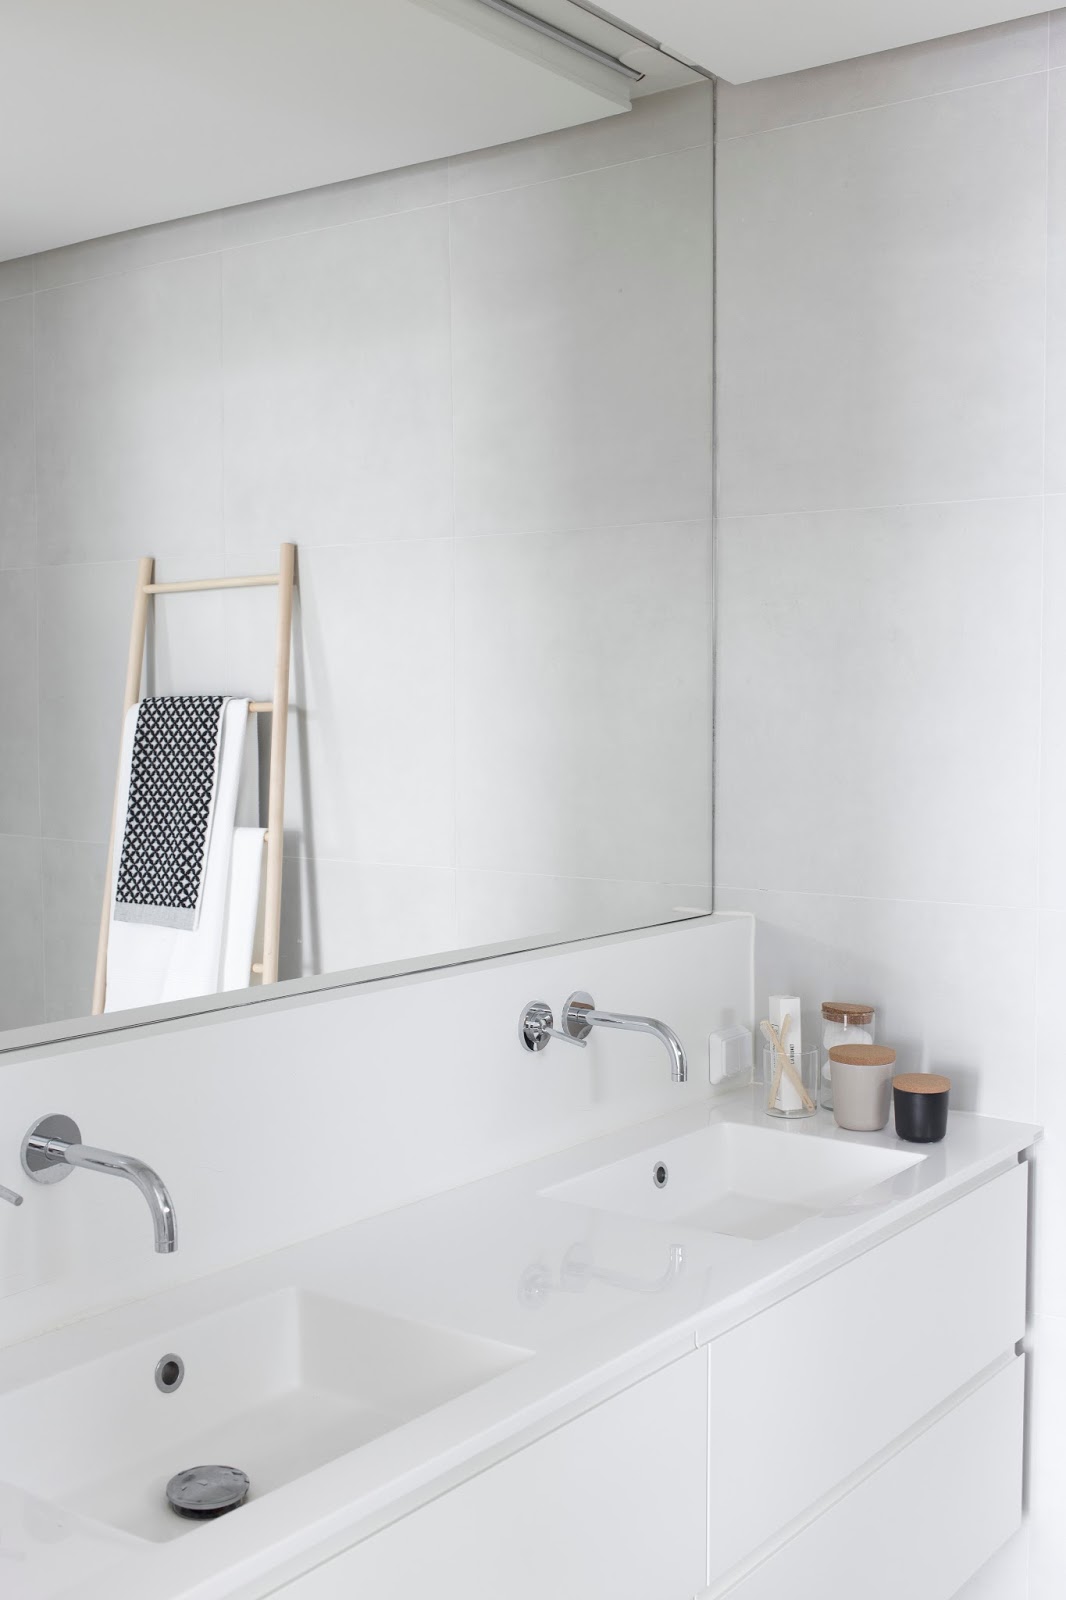 Dit is de mooie kleine badkamer van Maja, die gekozen heeft voor wit en lichtgrijs. Klik hier voor meer foto's.